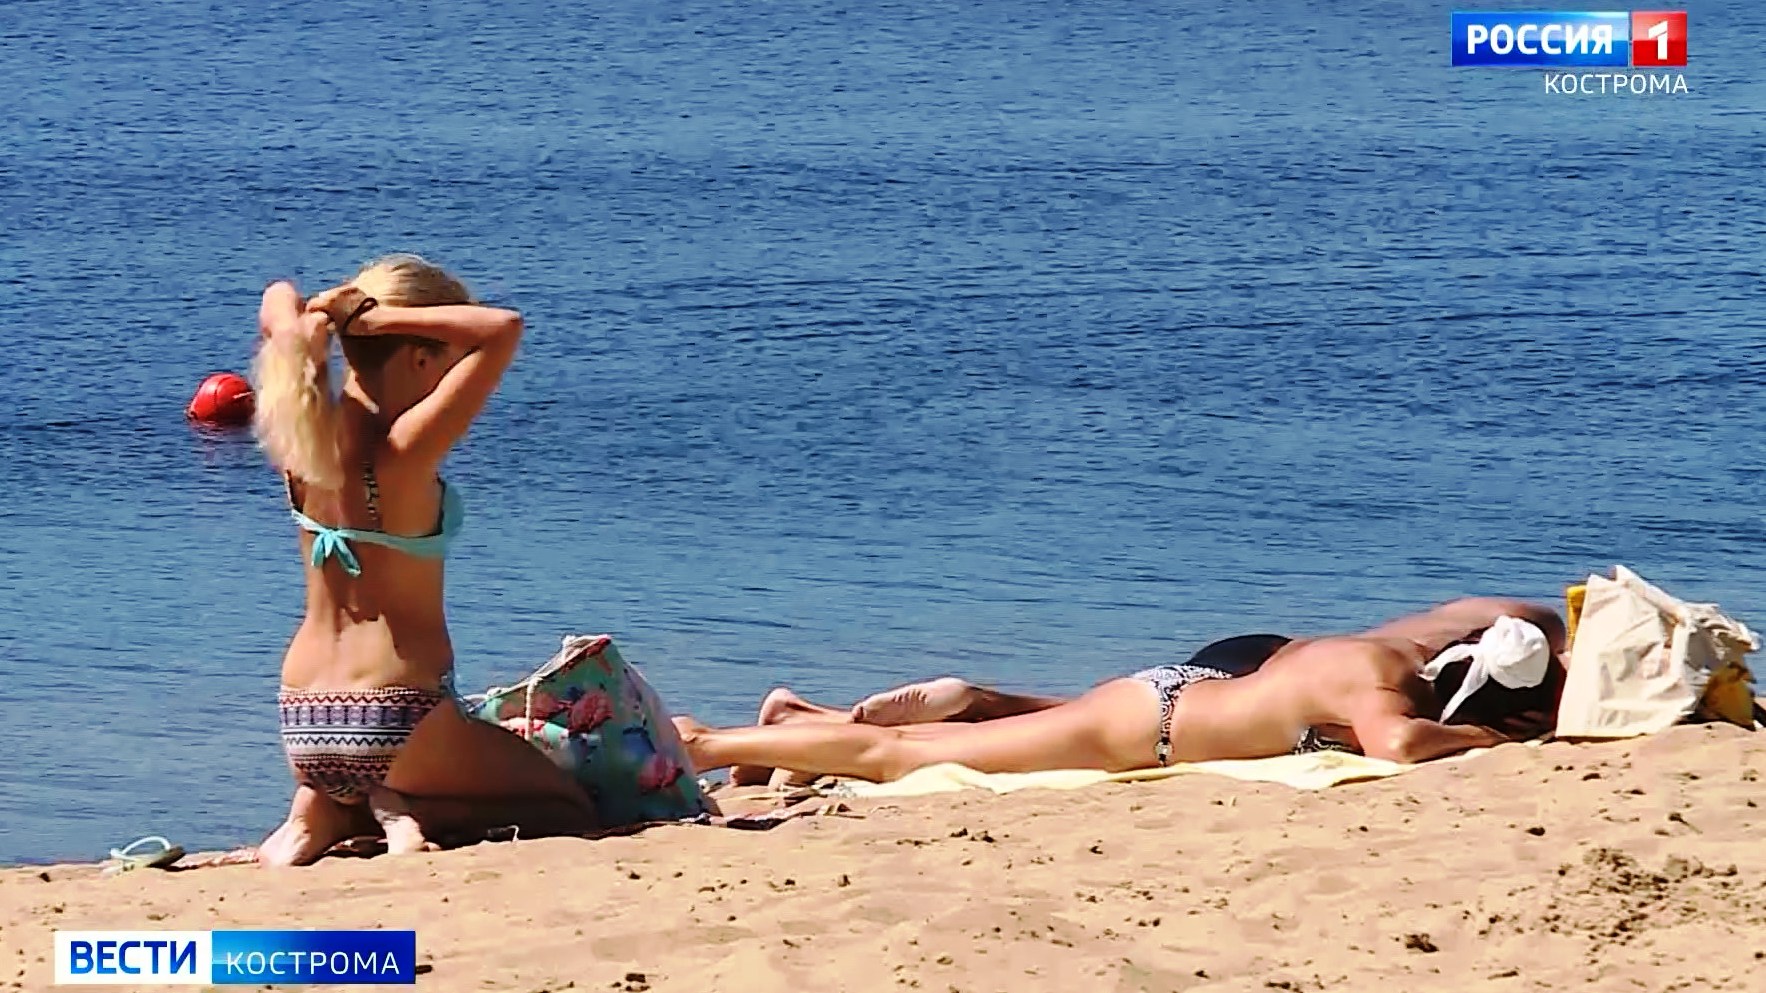 Мужчины высказались о девушках в бикини на костромских пляжах